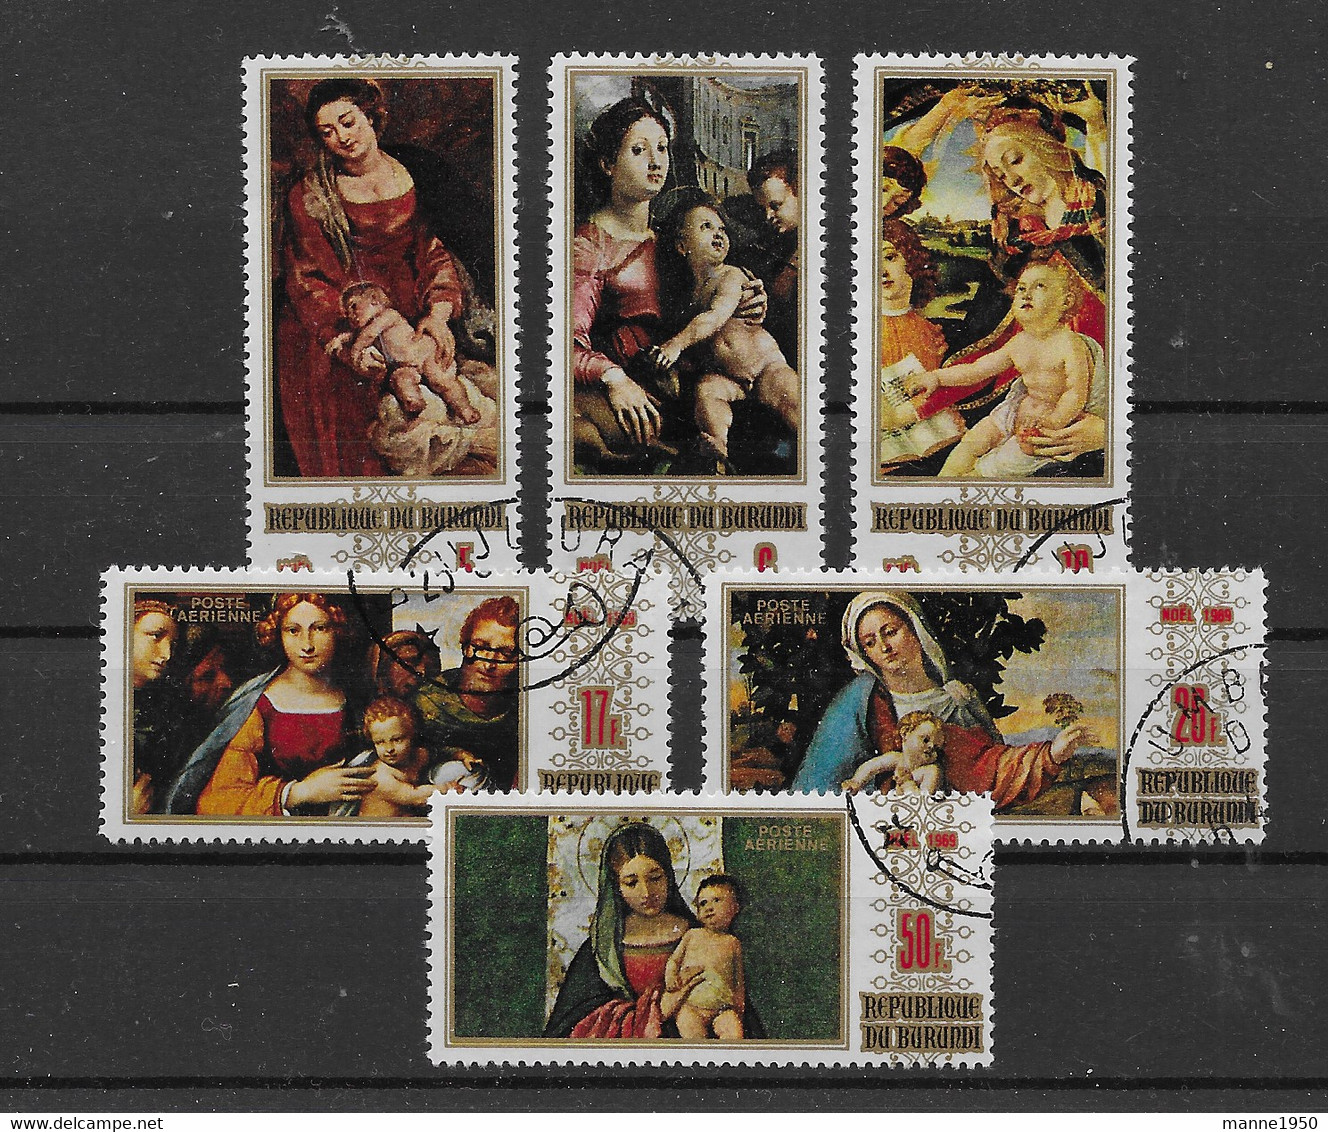 Burundi 1969 Madonna Mi.Nr. 531/36 Kpl. Satz Gestempelt - Used Stamps